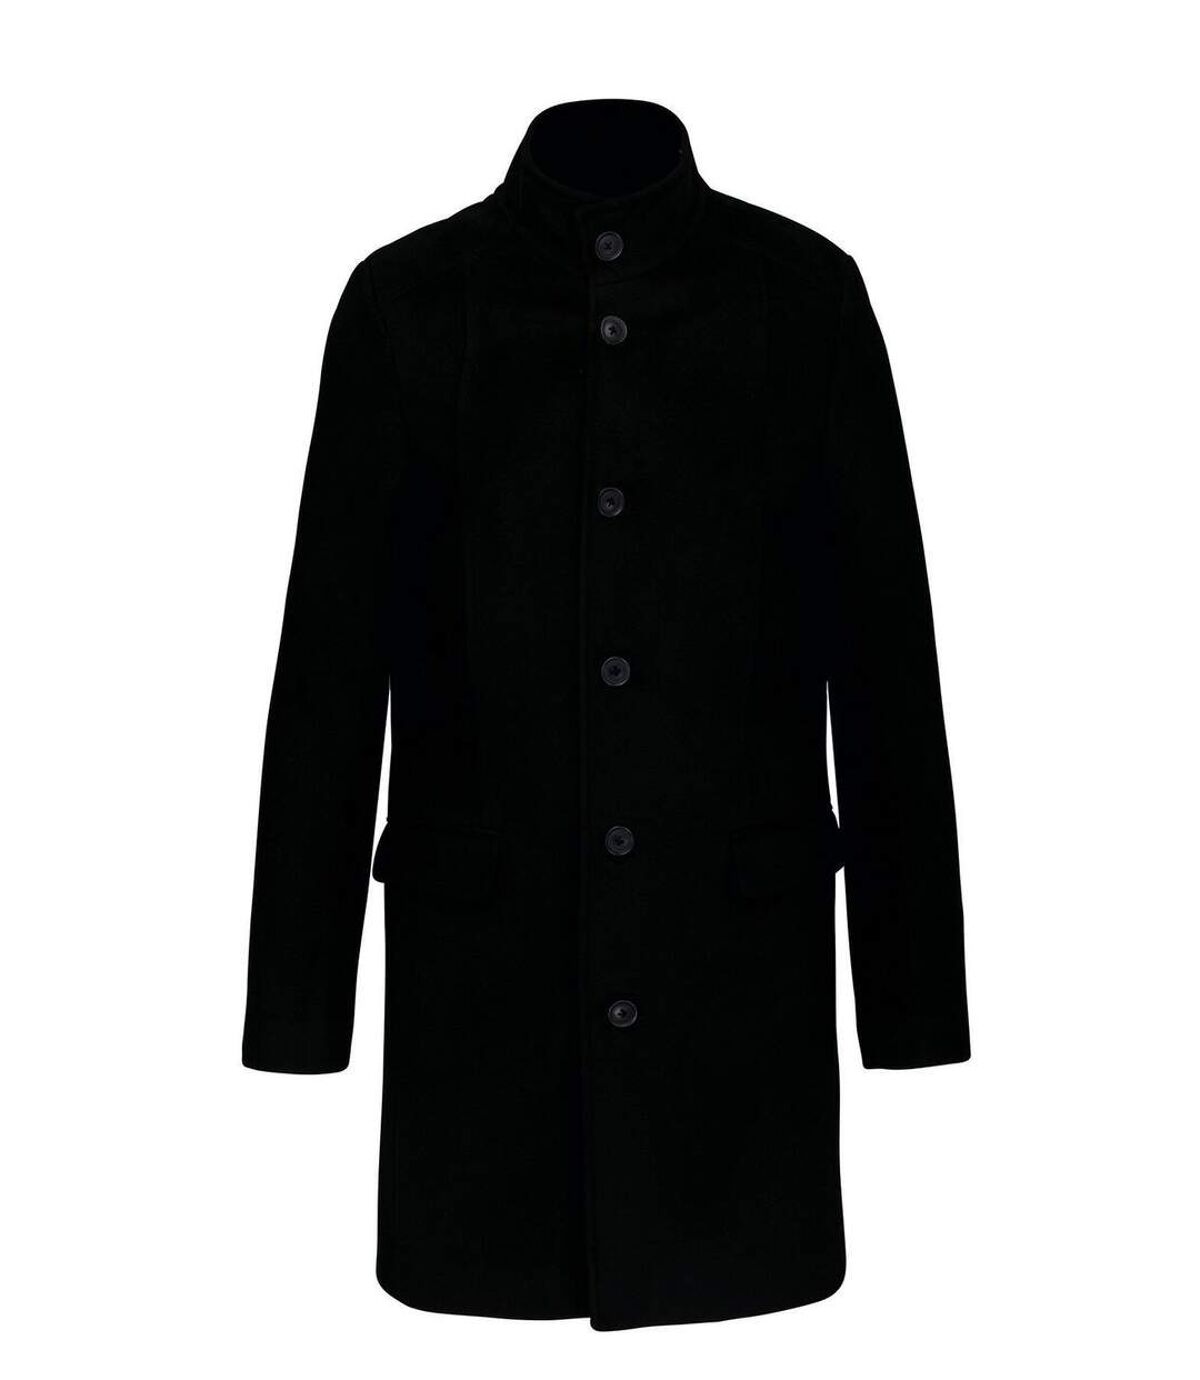 Manteau business premium homme - K6140 - noir